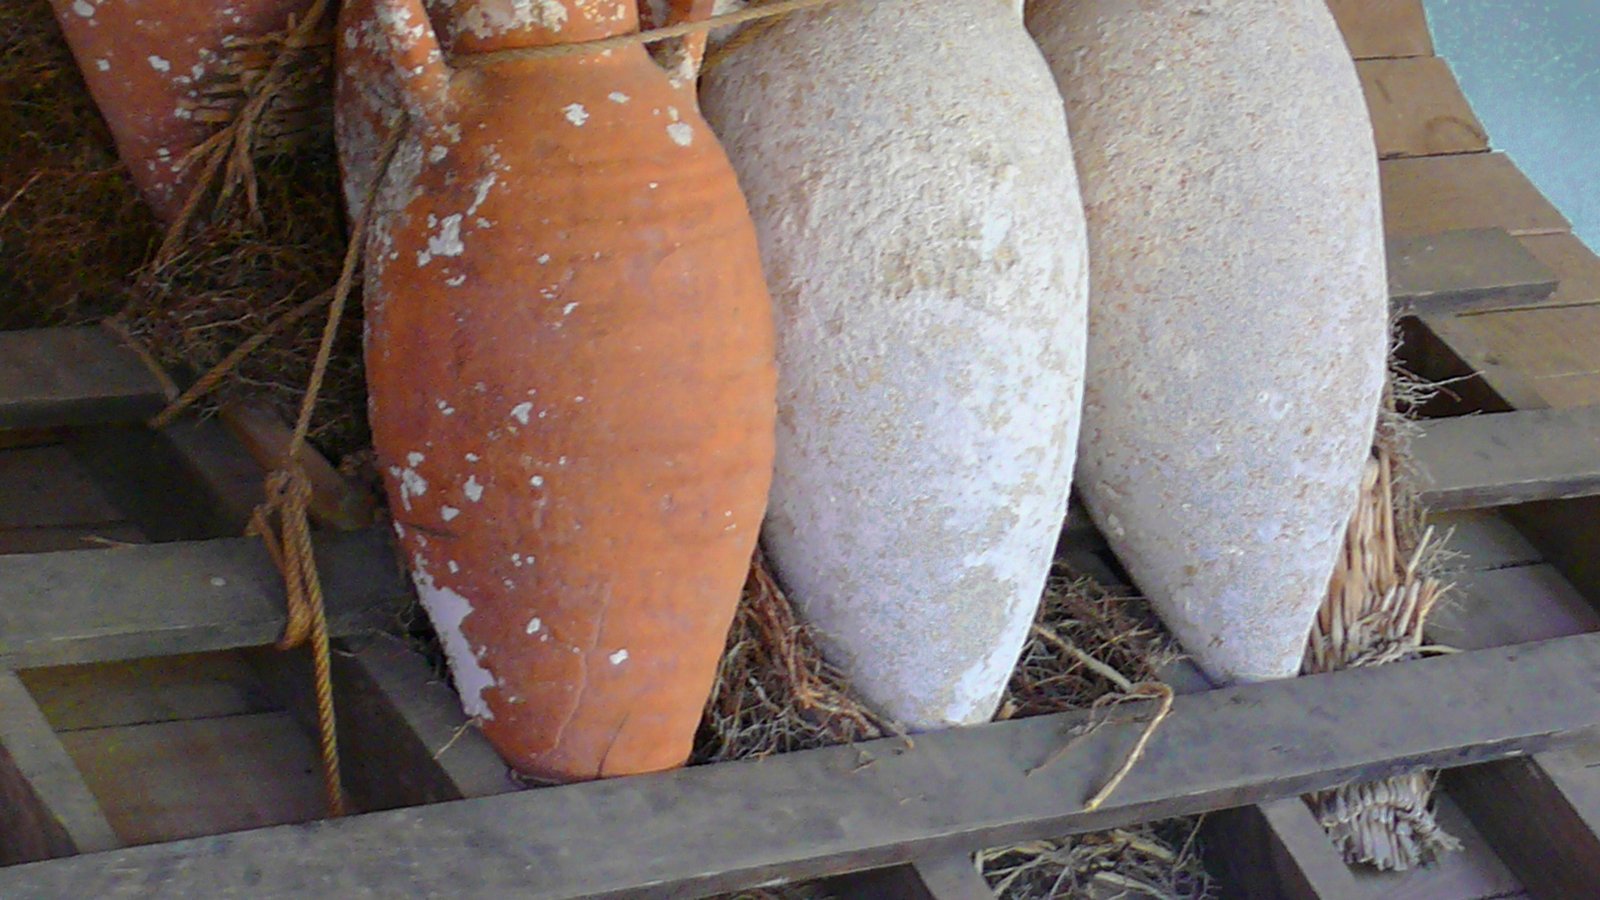 Amphorae stacking